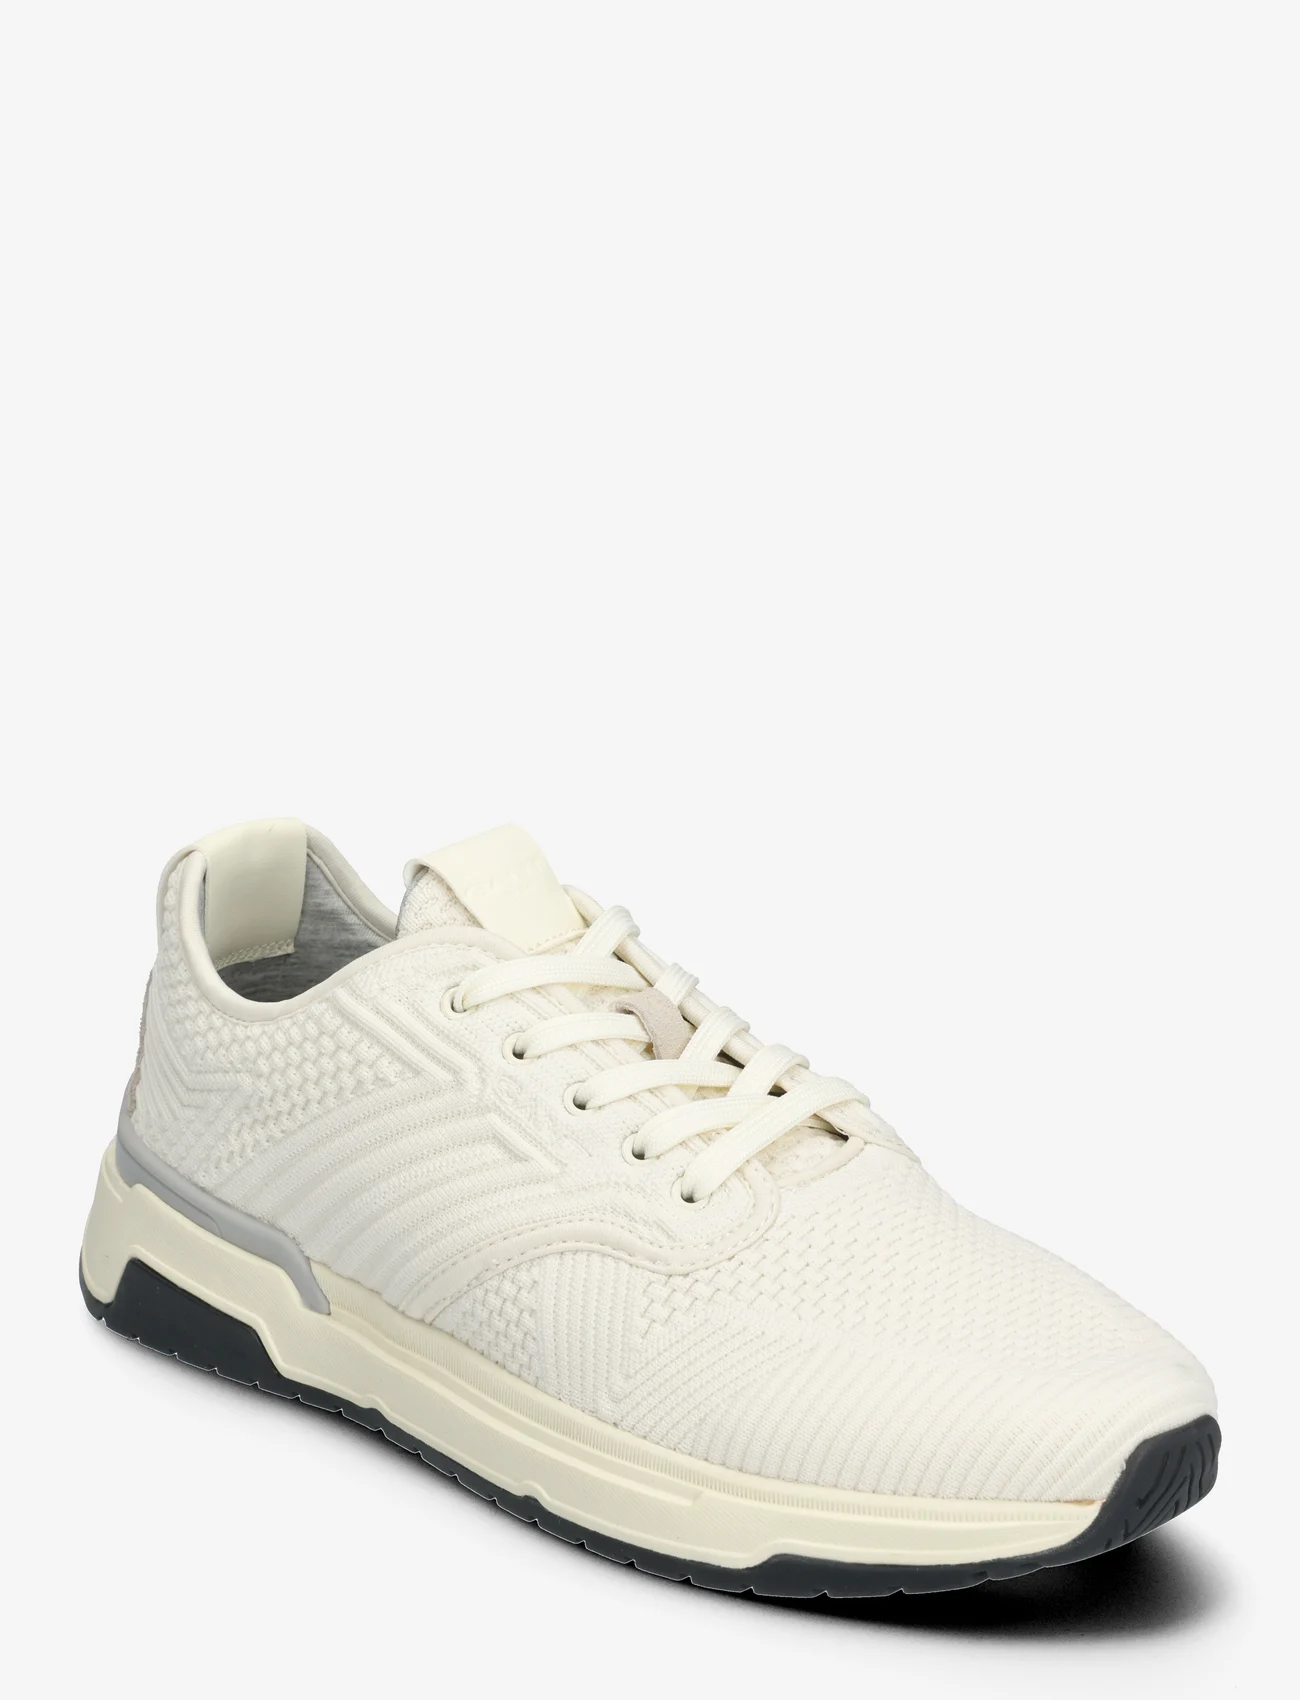 GANT - Jeuton Sneaker - låga sneakers - off white - 0